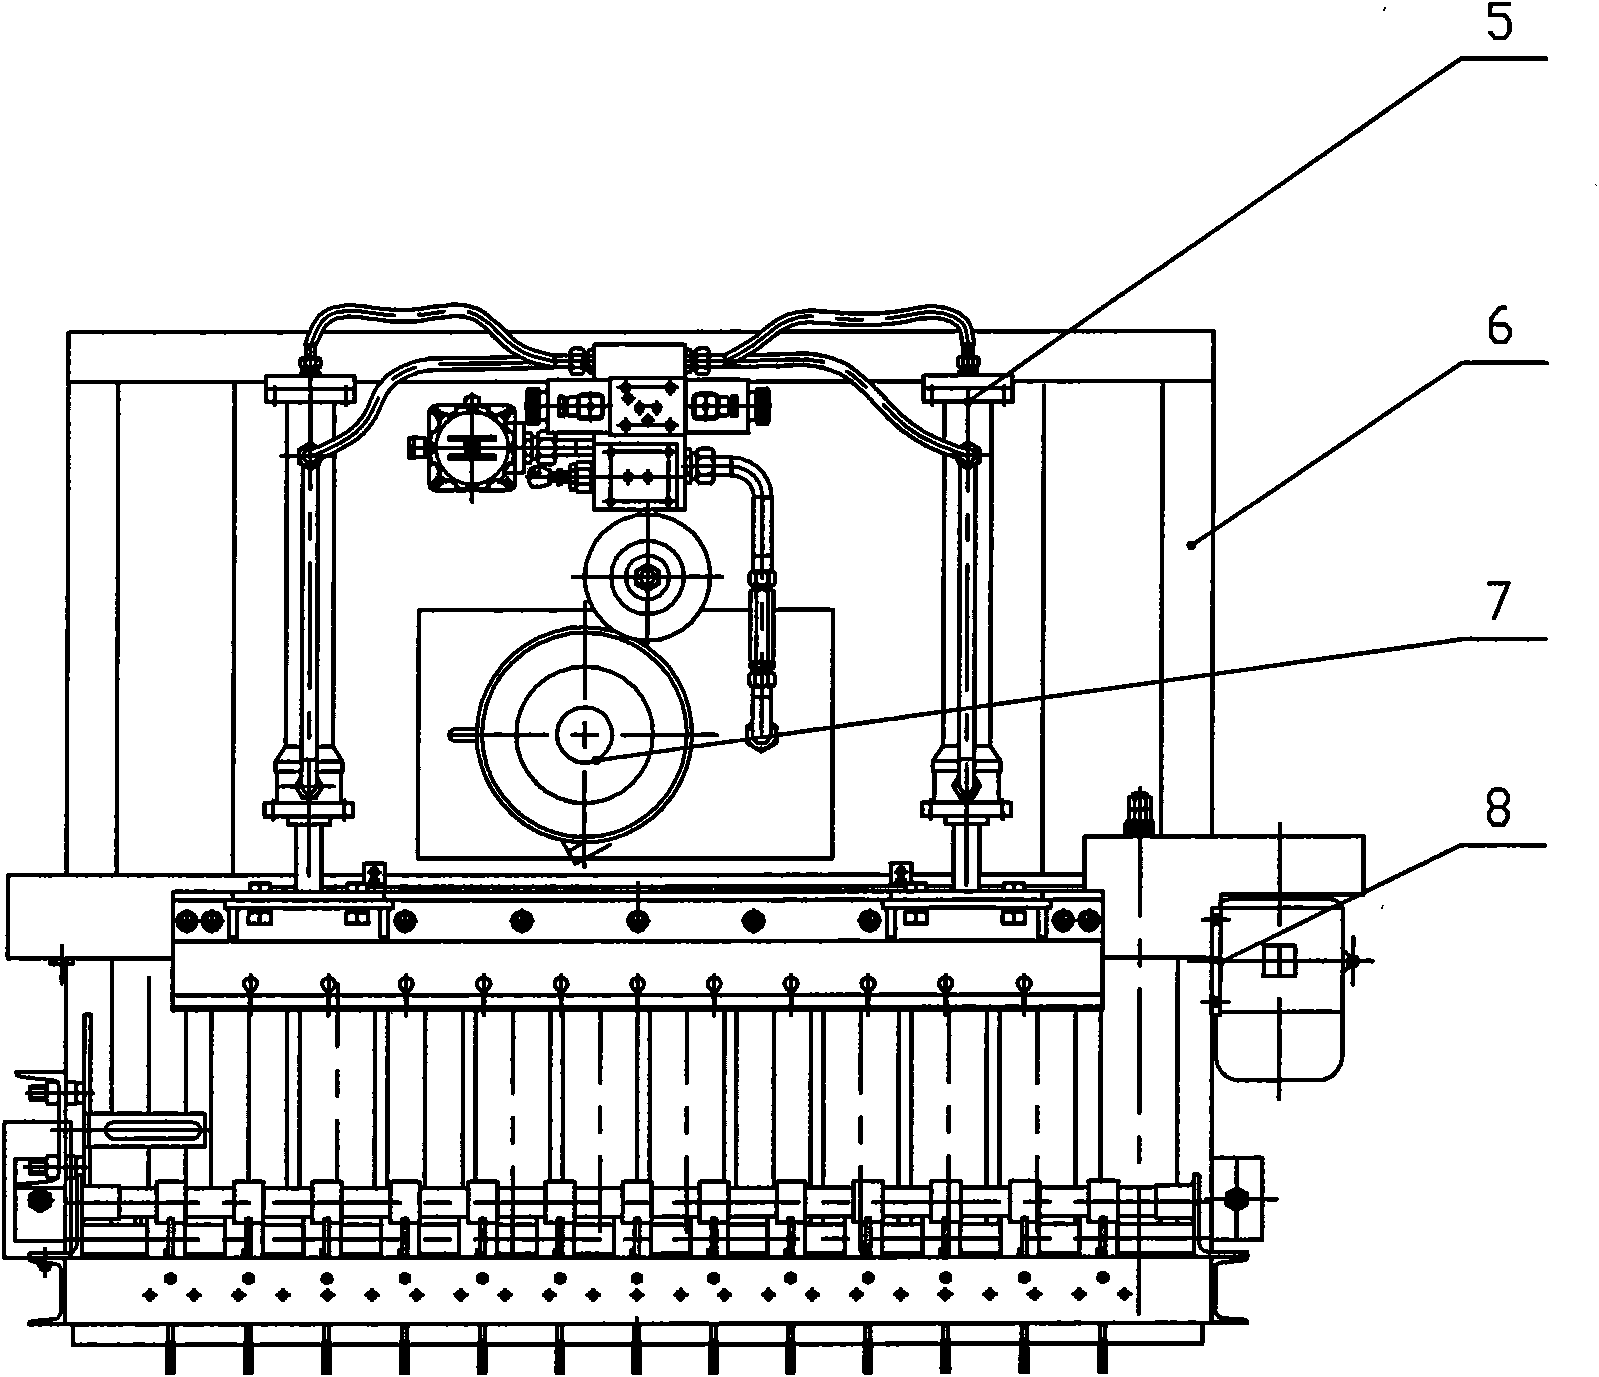 Hydraulic blank cutting machine